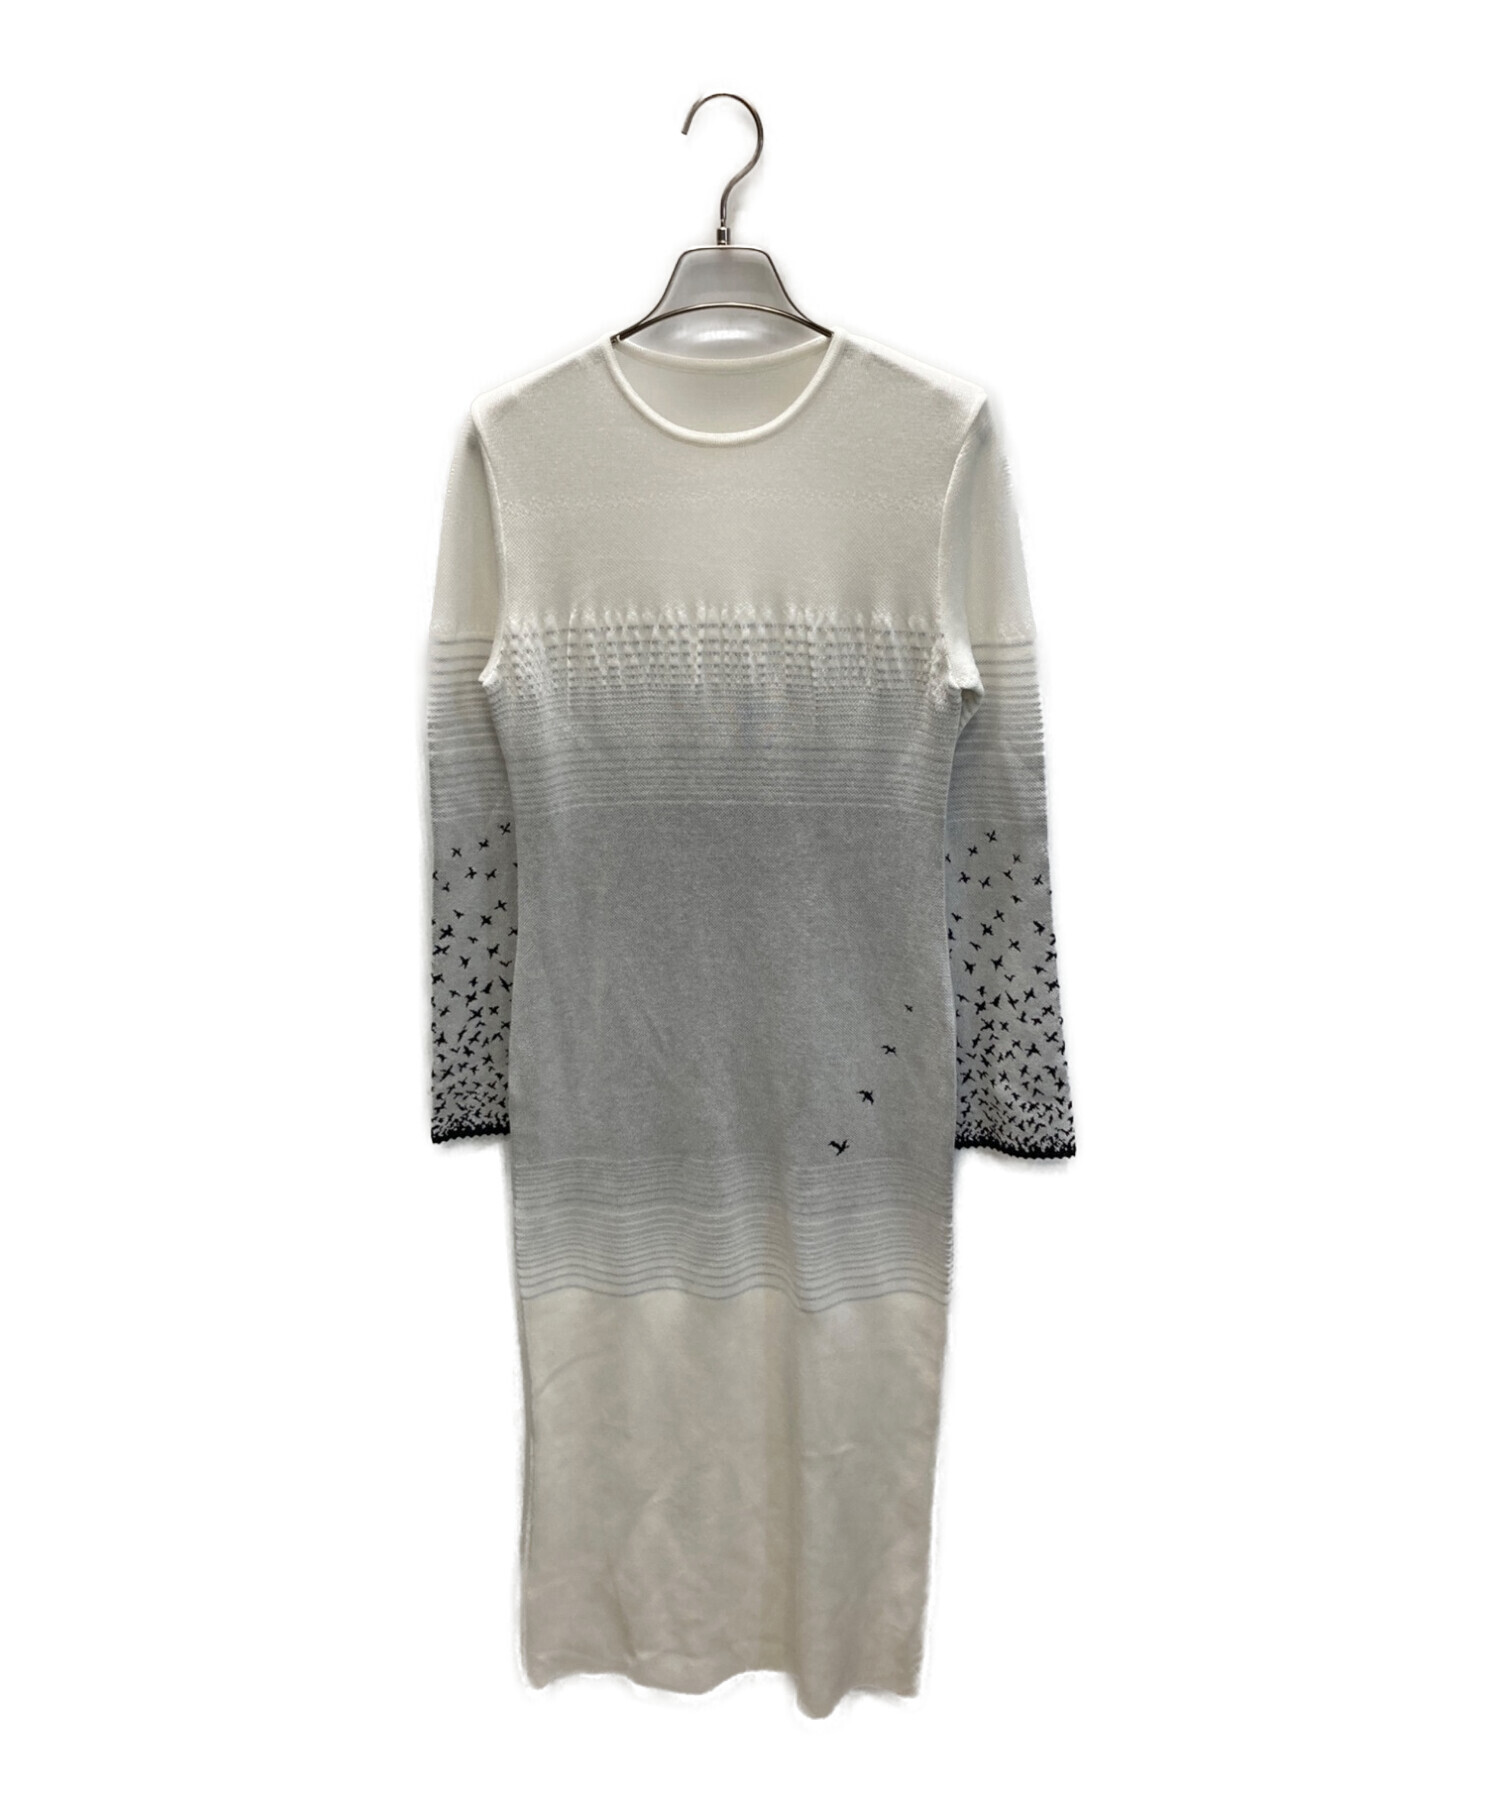 Mame Kurogouchi (マメクロゴウチ) Crane Pattern Jacquard Knitted Dress ホワイト×グレー  サイズ:1